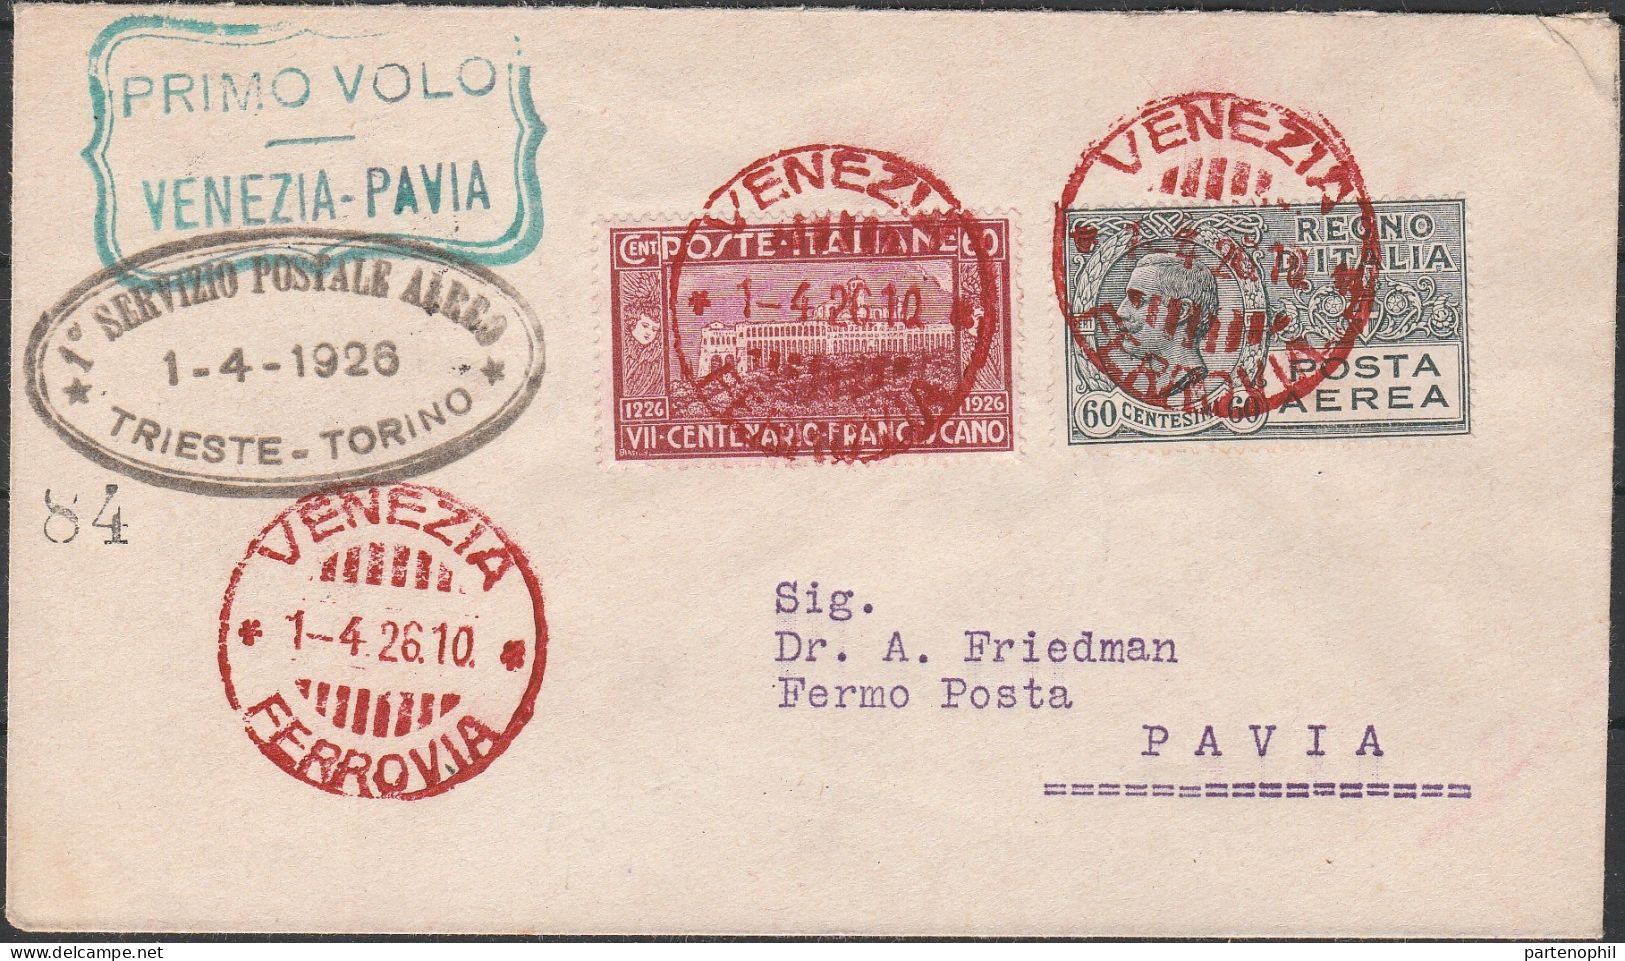 97 - Posta Aerea - Linea Aerea Commerciale Venezia-Pavia Del 1.4.1926, Con Annullo Di Arrivo Al Verso Su Segnatasse Da 3 - Marcophilie (Avions)